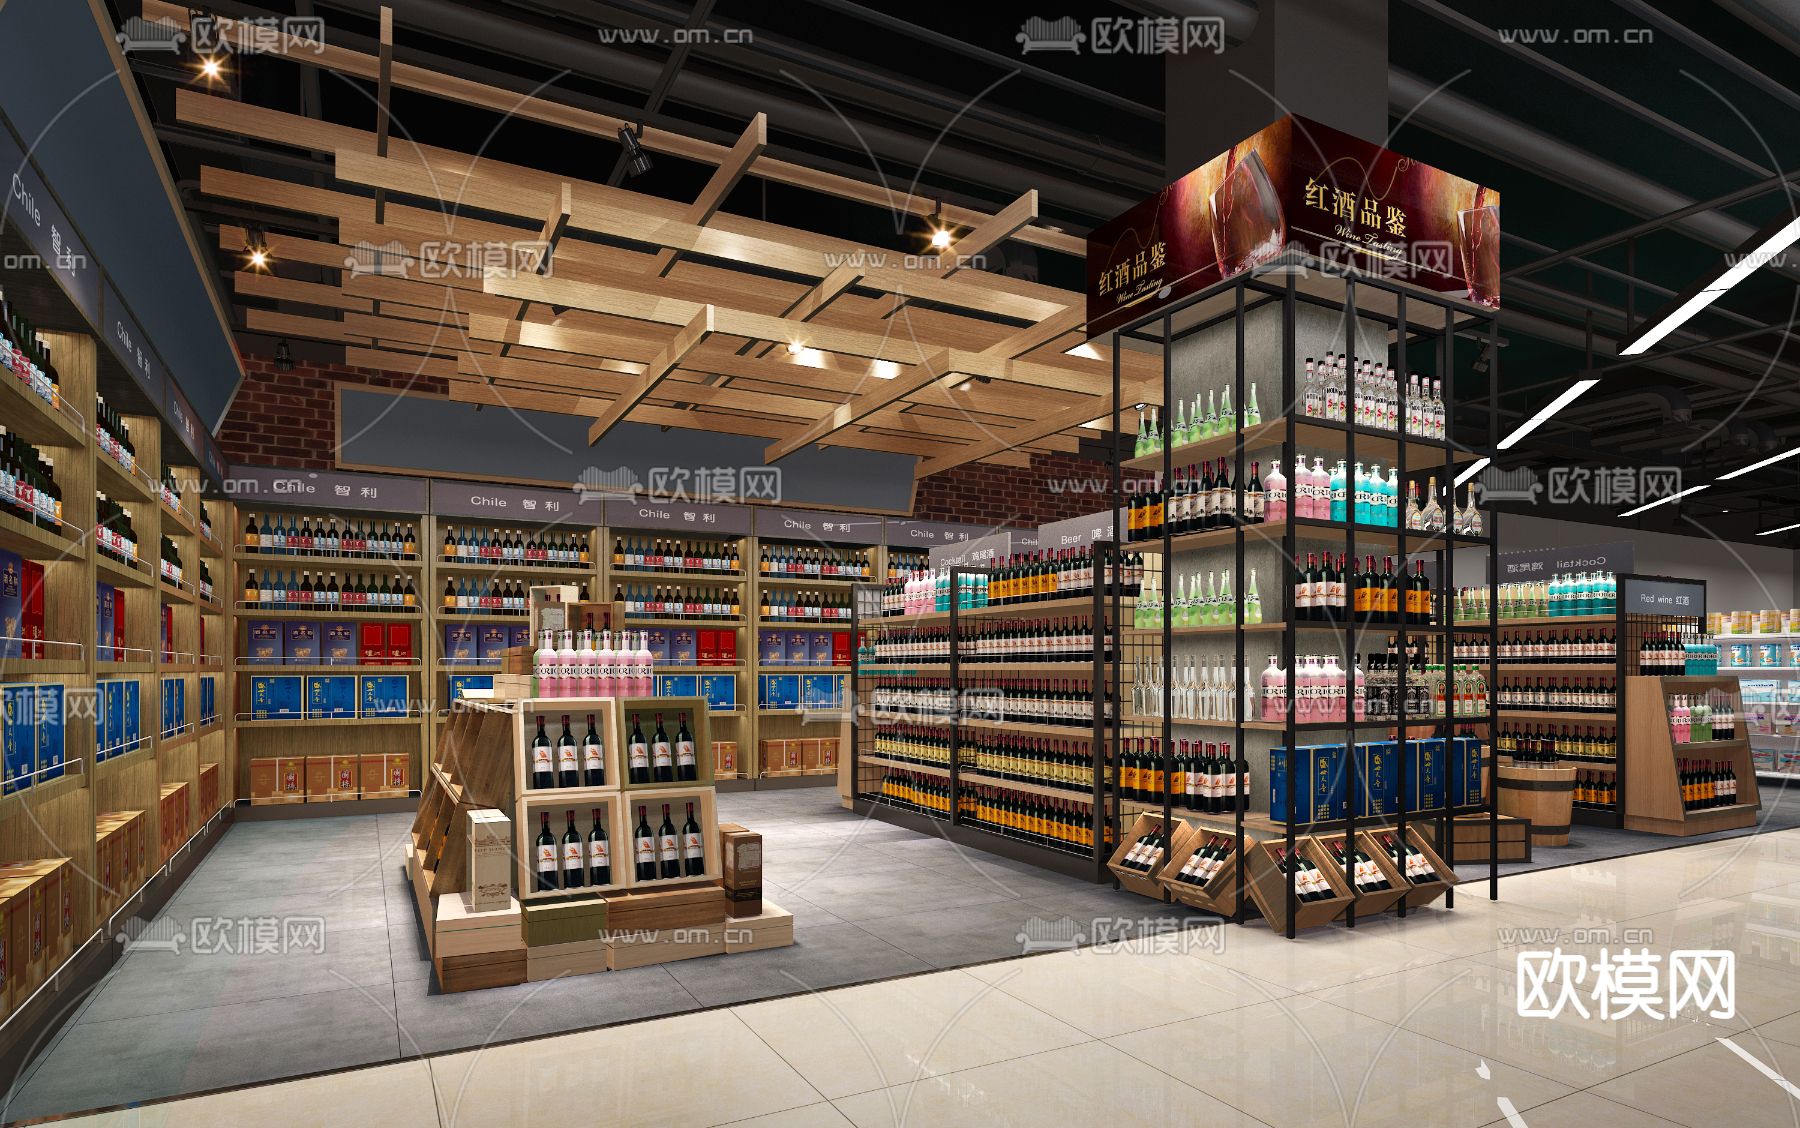 酒水红酒超市零售货架摄影图配图高清摄影大图-千库网